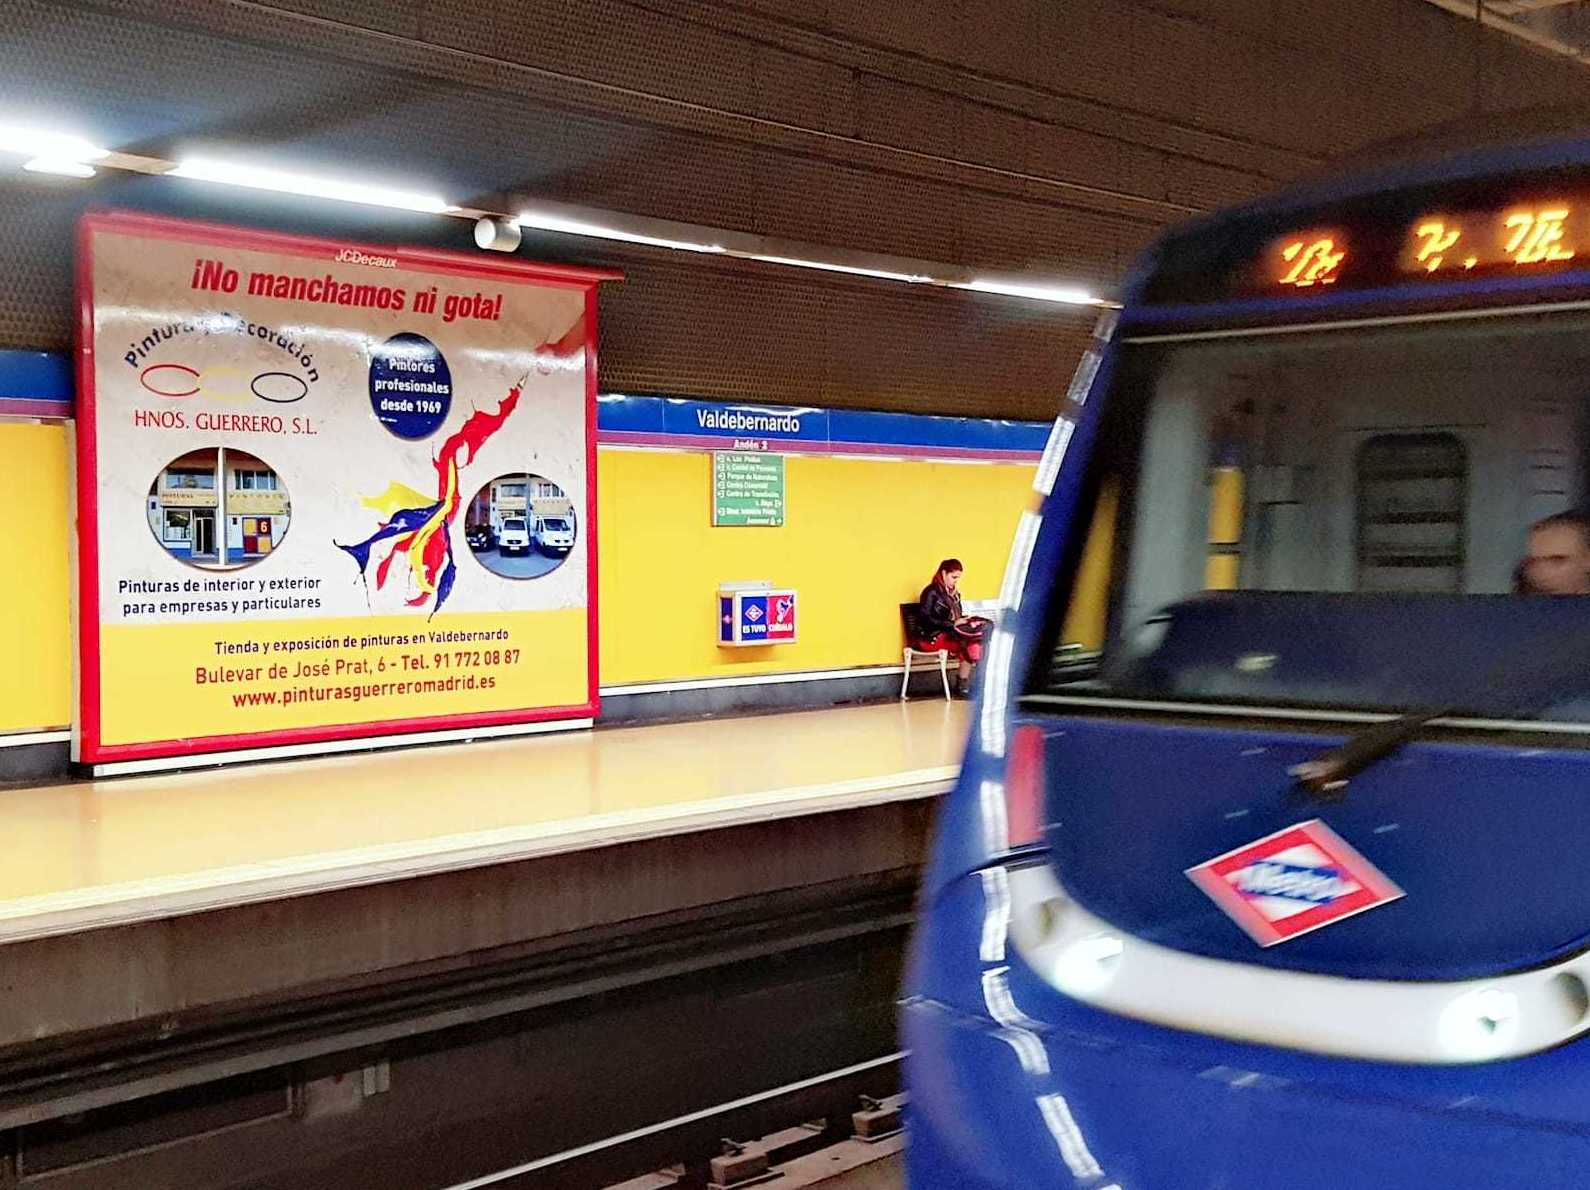 Publicidad en el Metro de Madrid (Linea 9 Valdebernardo)